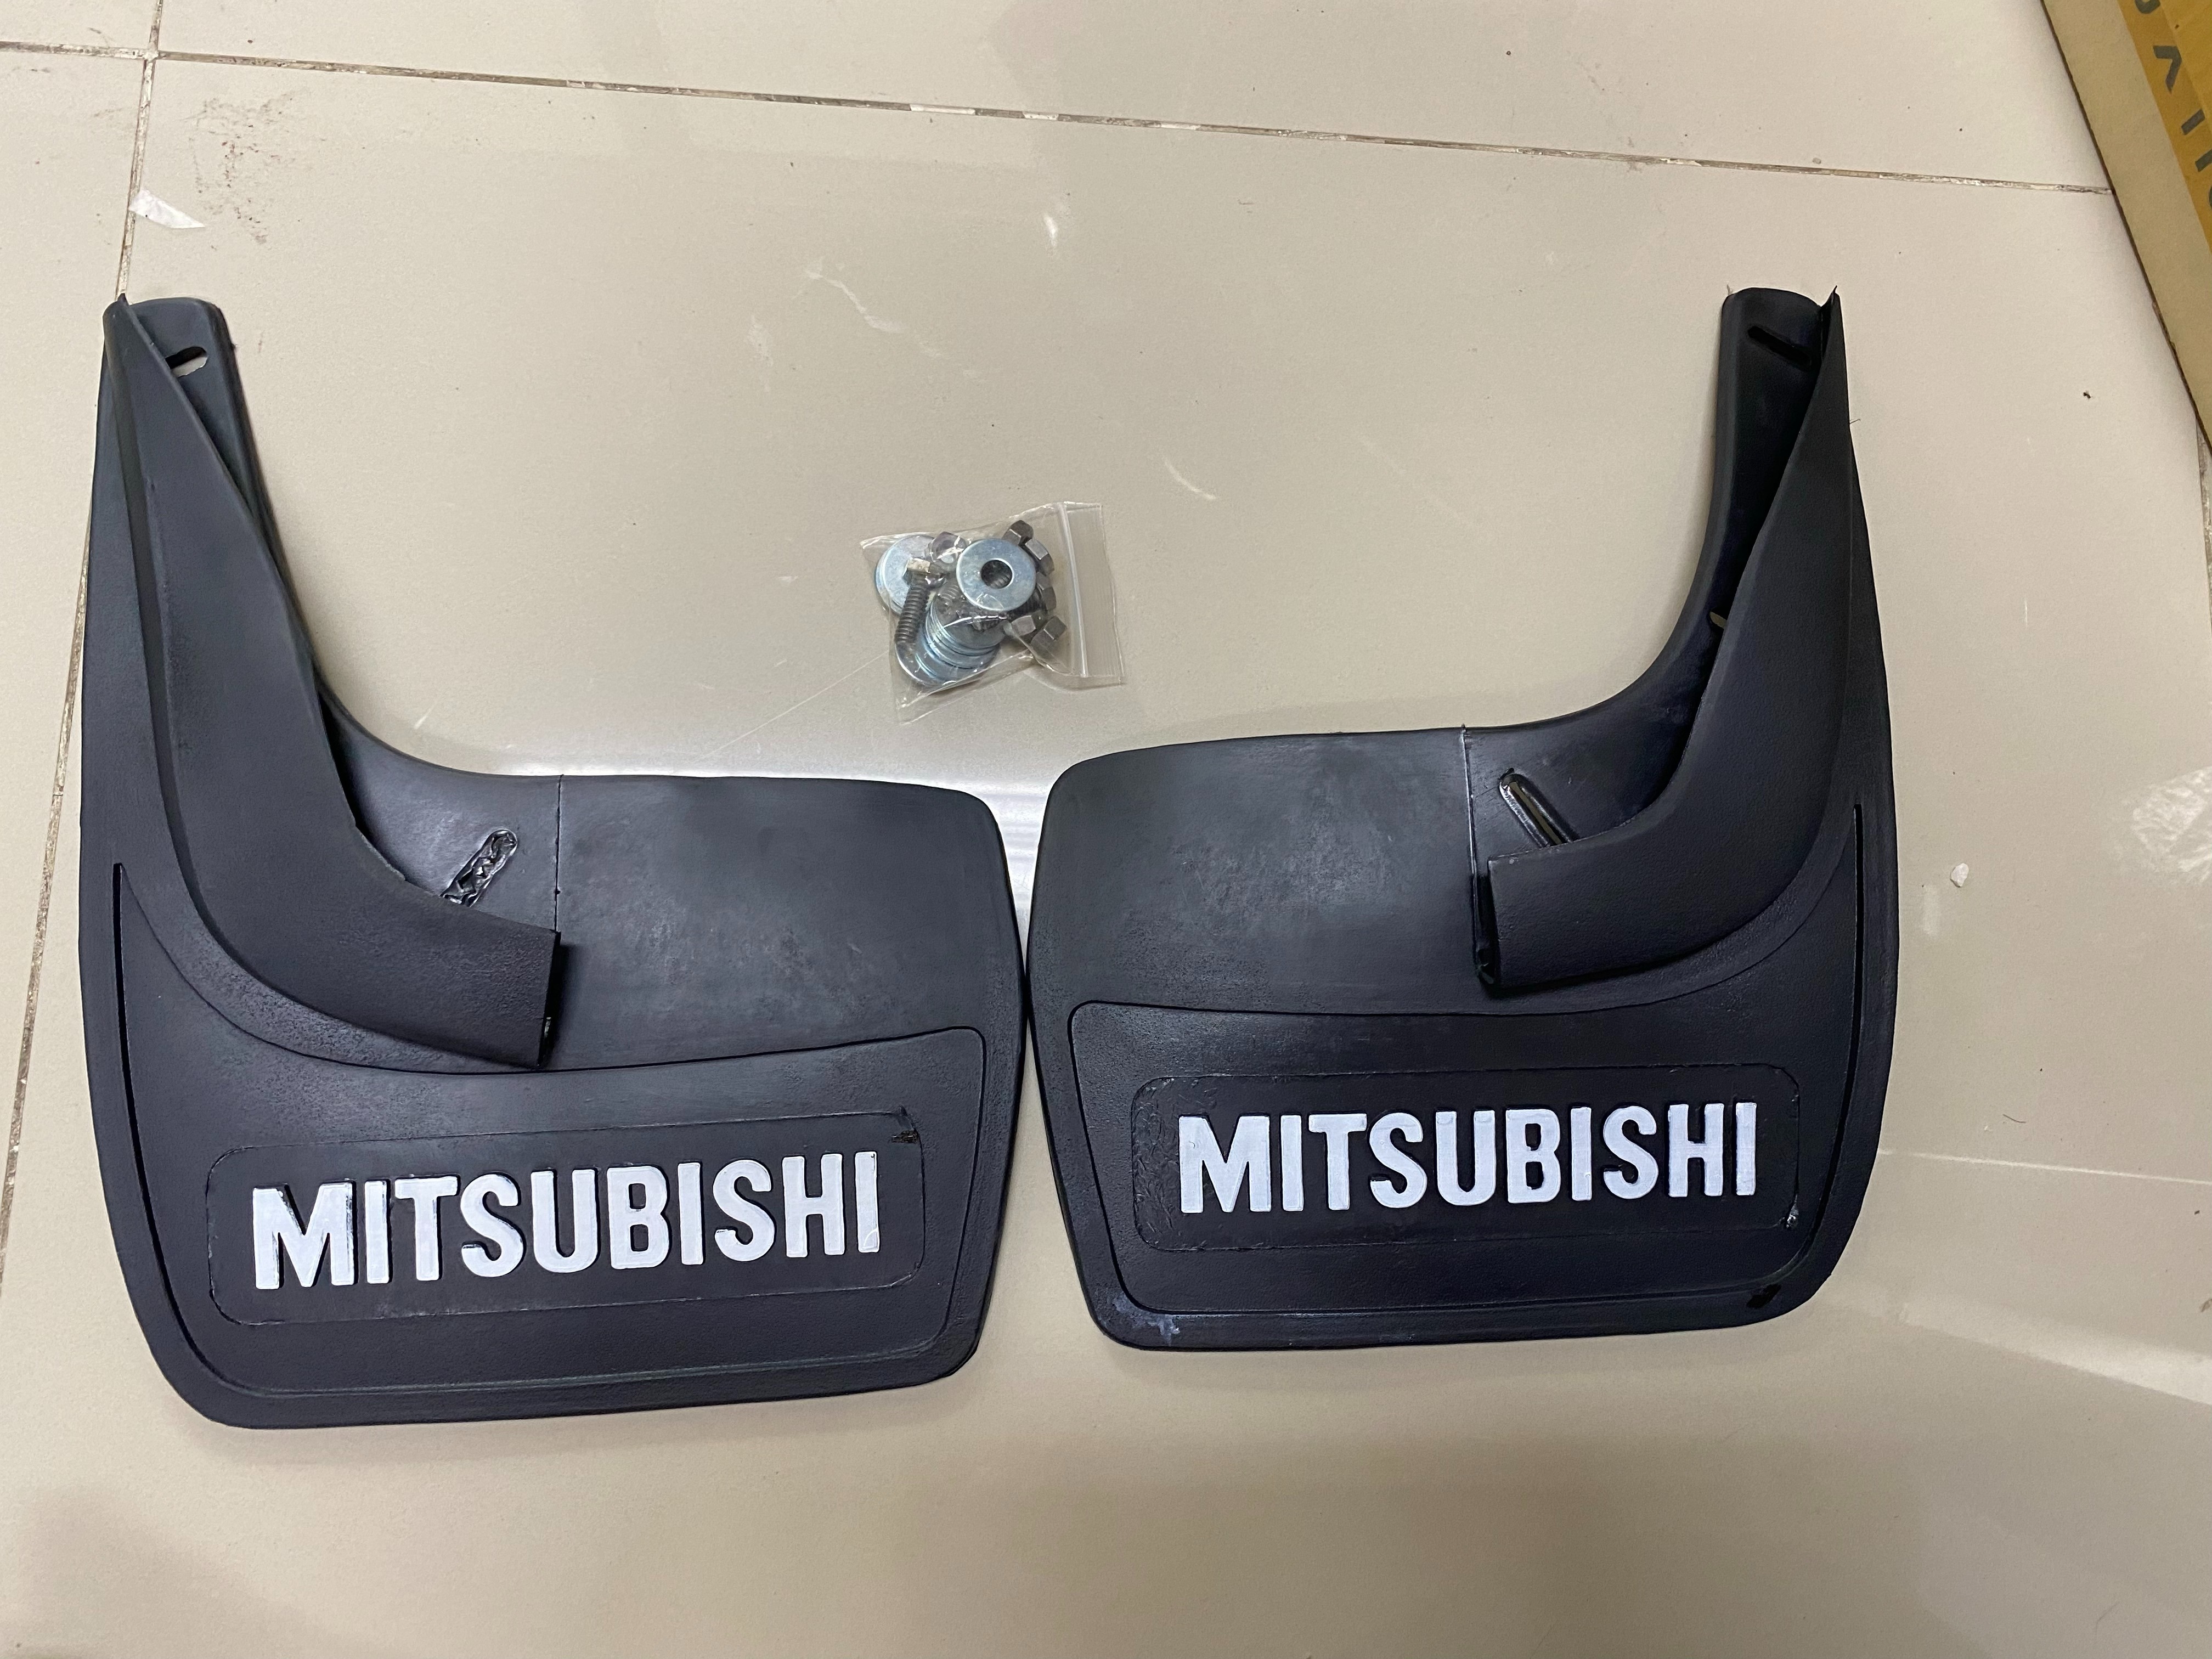 ยางบังโคลน  ยางกันโคลน หน้า  รถเก๋ง ทั่วไป ยางสีดำ เขียน  MITSUBISHI 2 ชิ้น Univeral Front  Rear Back Mud Guard Rubber มีเก็บเงินปลายทาง